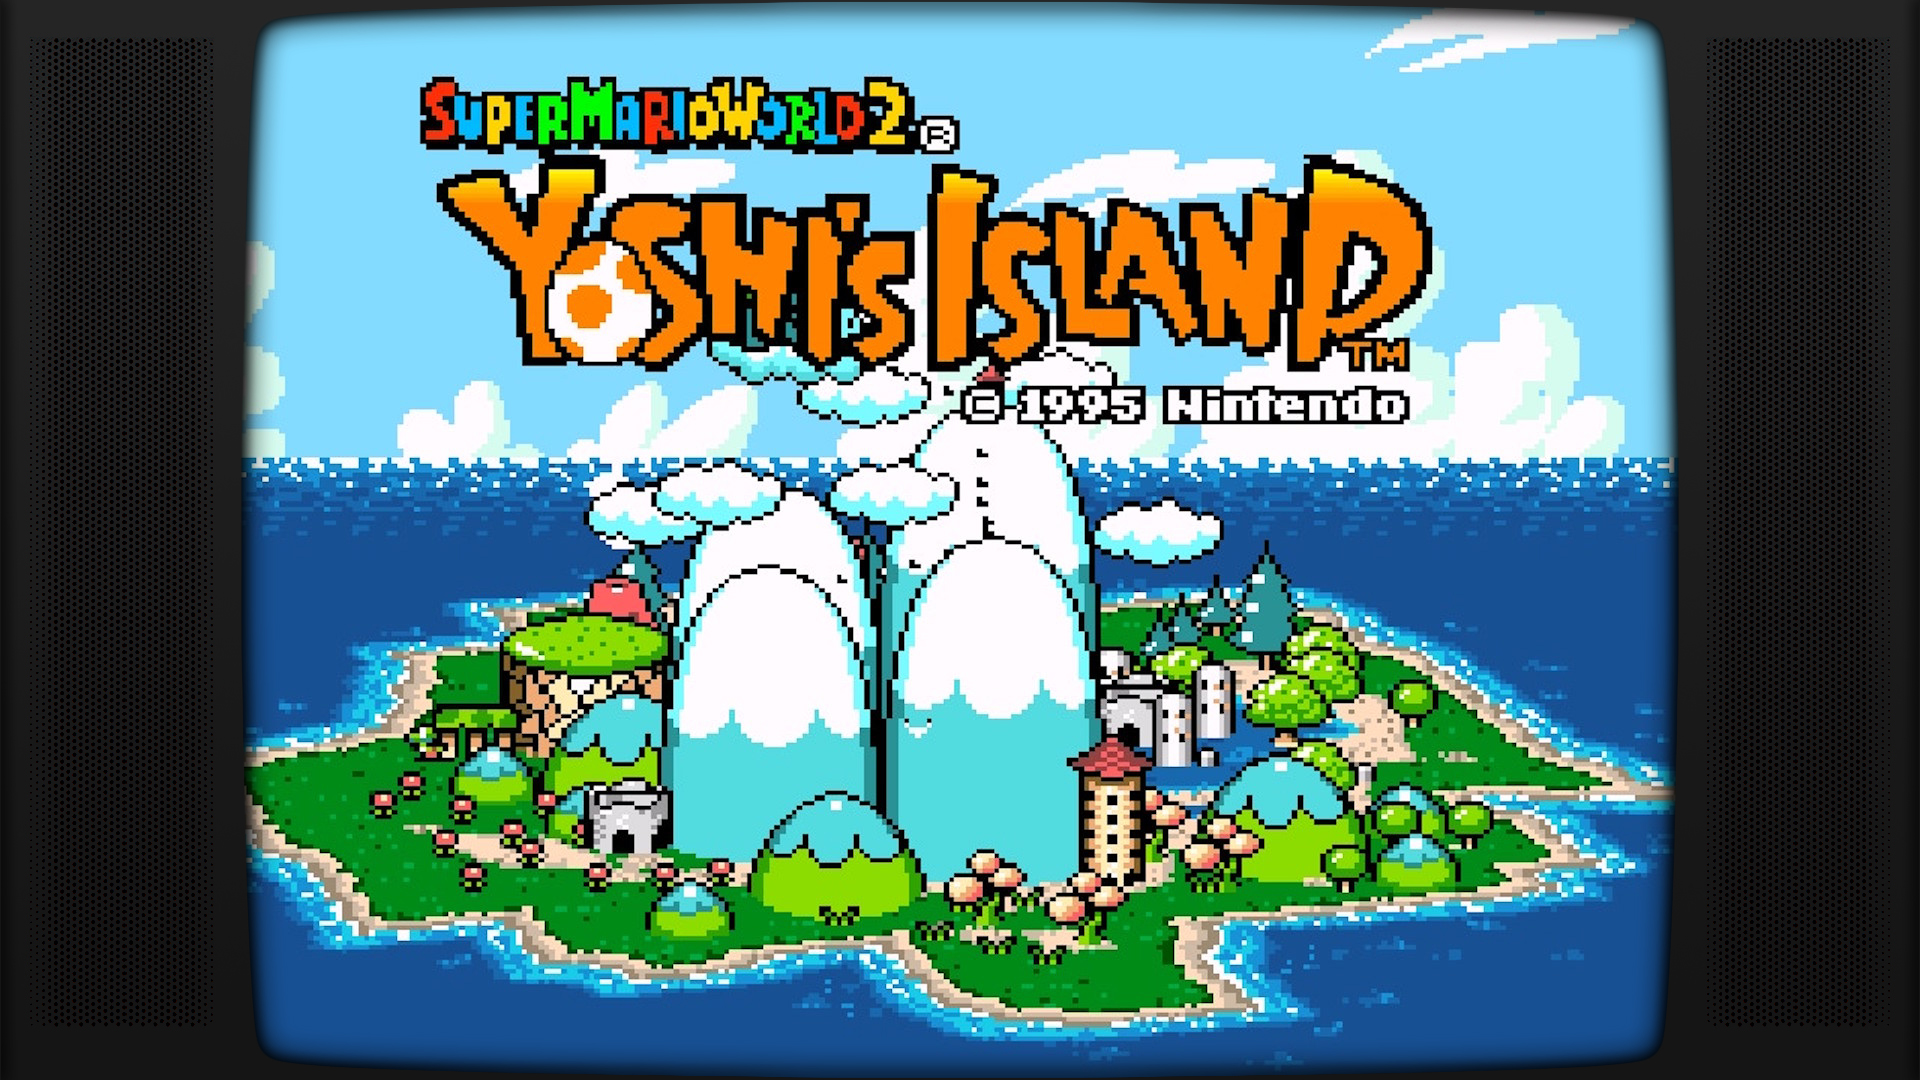 Super mario world yoshi's island. Yoshi's Island giflogo. Title Screen Yoshi Island. Yoshi's Island Castle Doors Falling. Super Mario World 2 - Yoshi's Island обои.